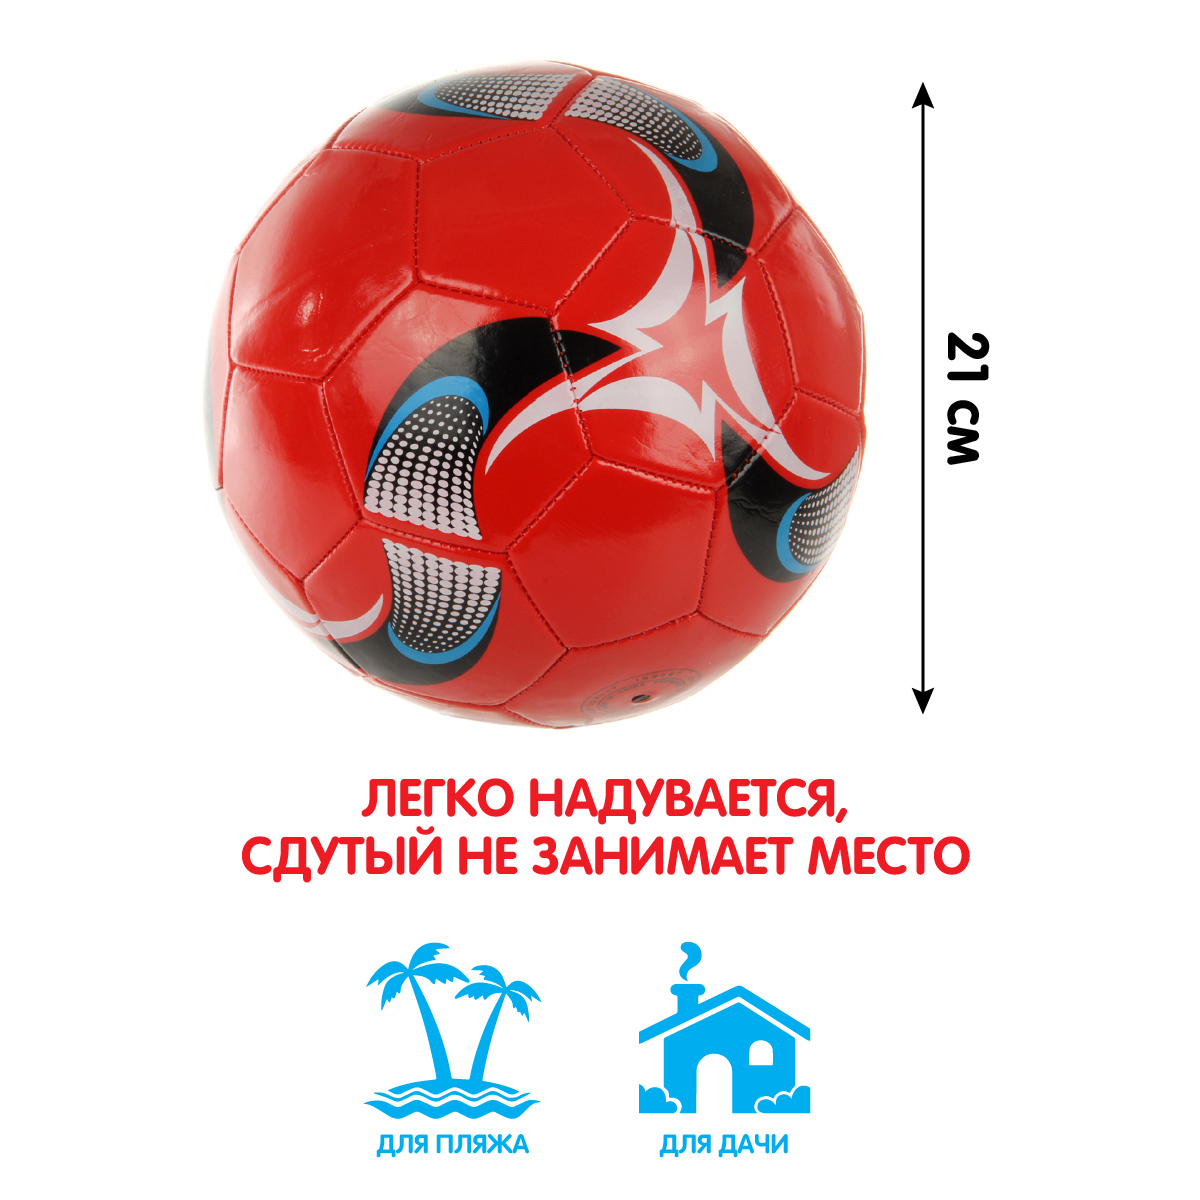 Мяч Veld Co футбольный 21 см - фото 2